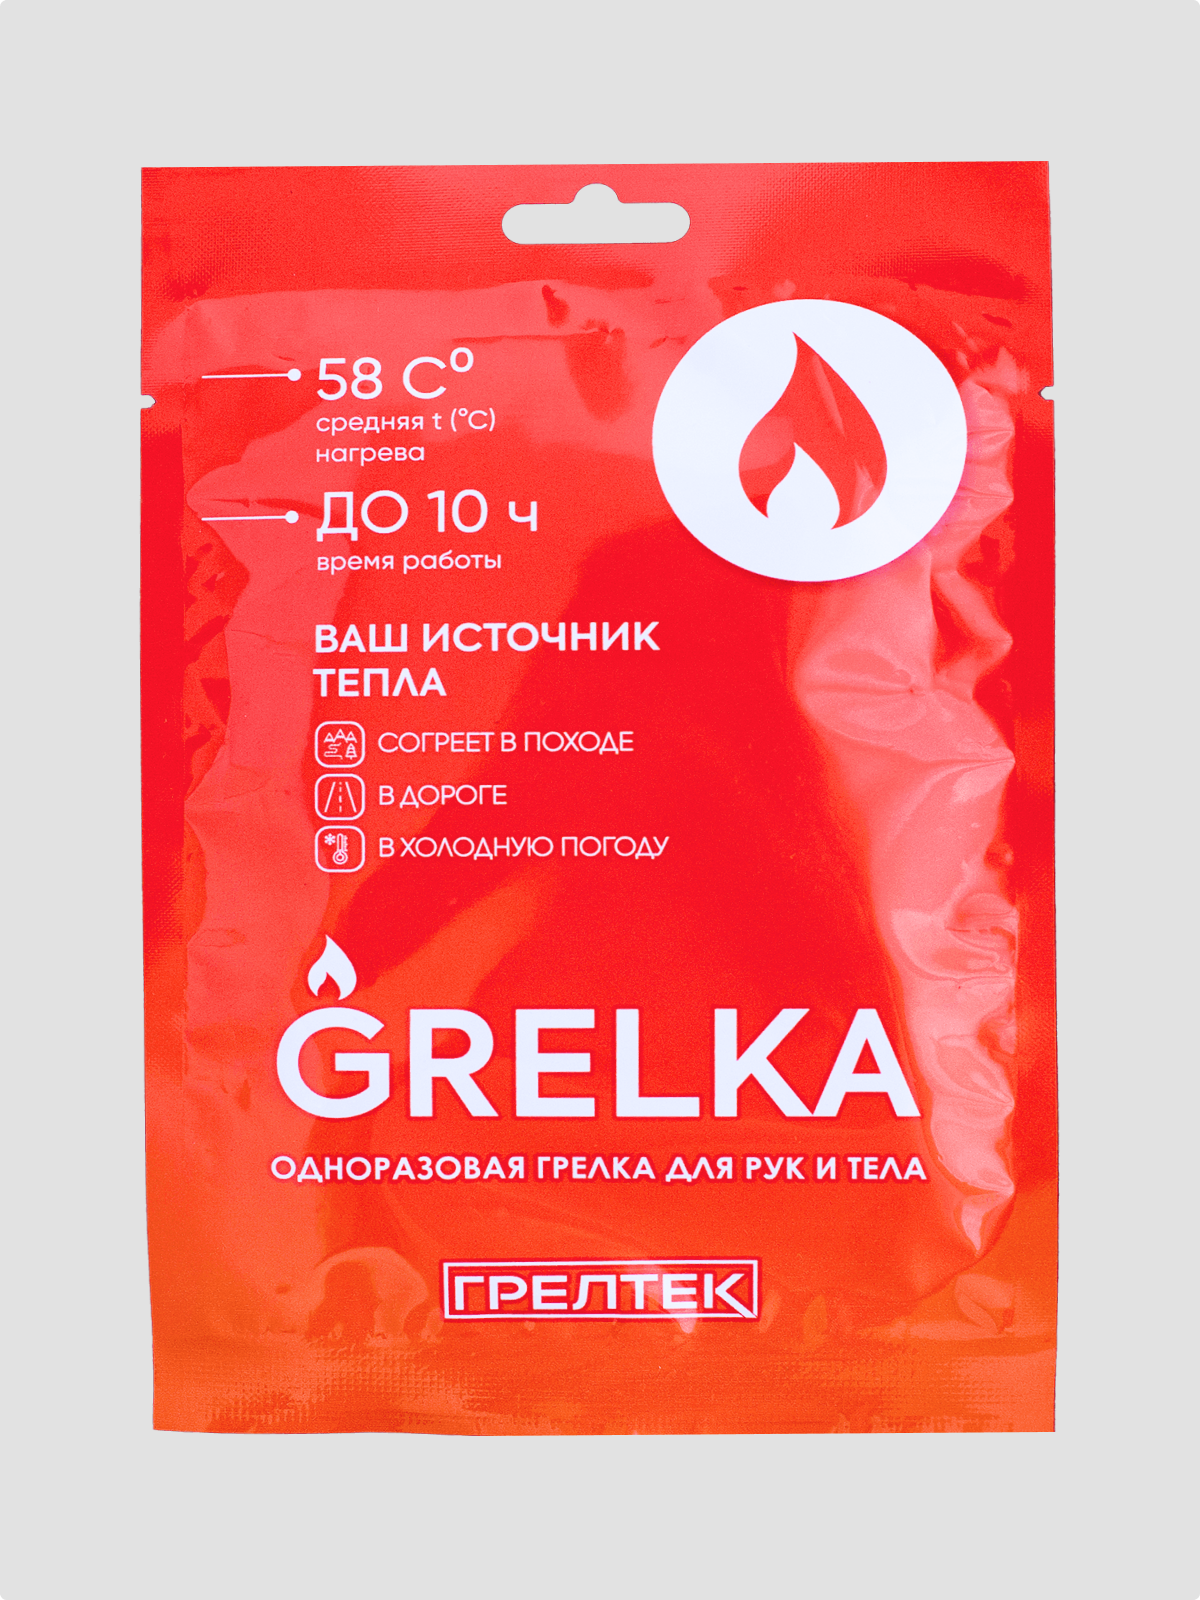 Самонагревающаяся грелка Grelka glchgrelka1 для тела, рук и ног 1 шт